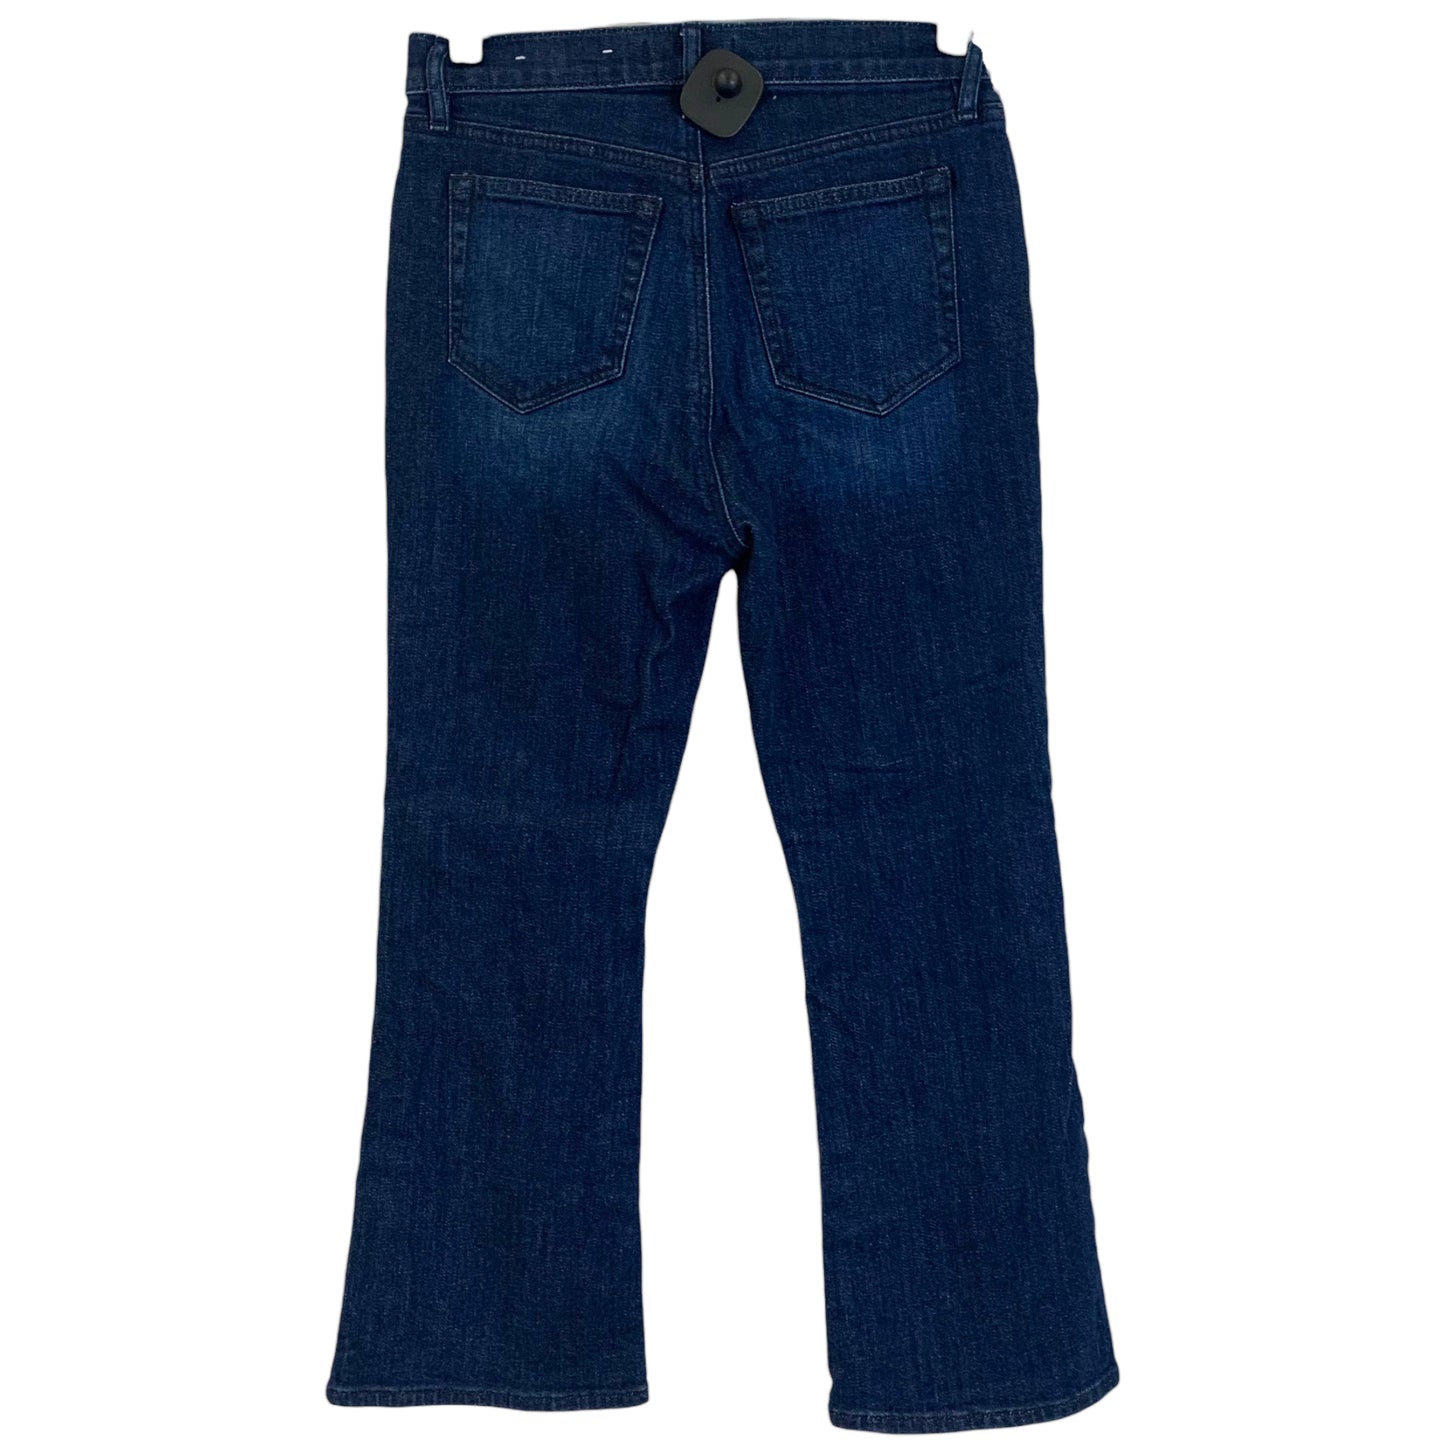 Jeans Boot Cut By Loft Size: 0 Petite